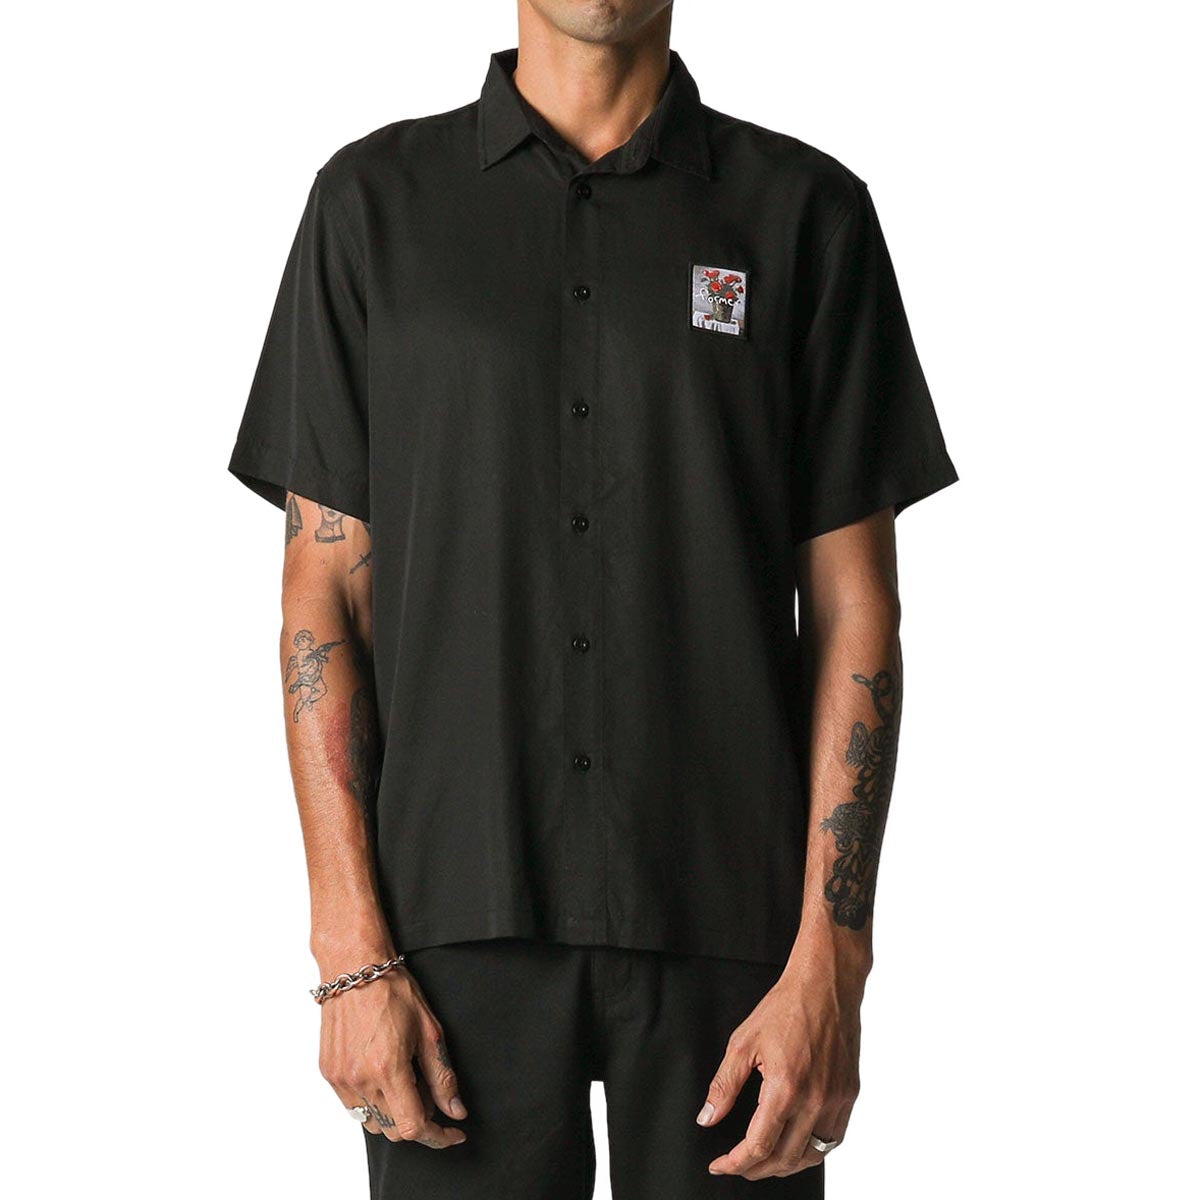 Former Vivian Still Life Shirt - Black image 1